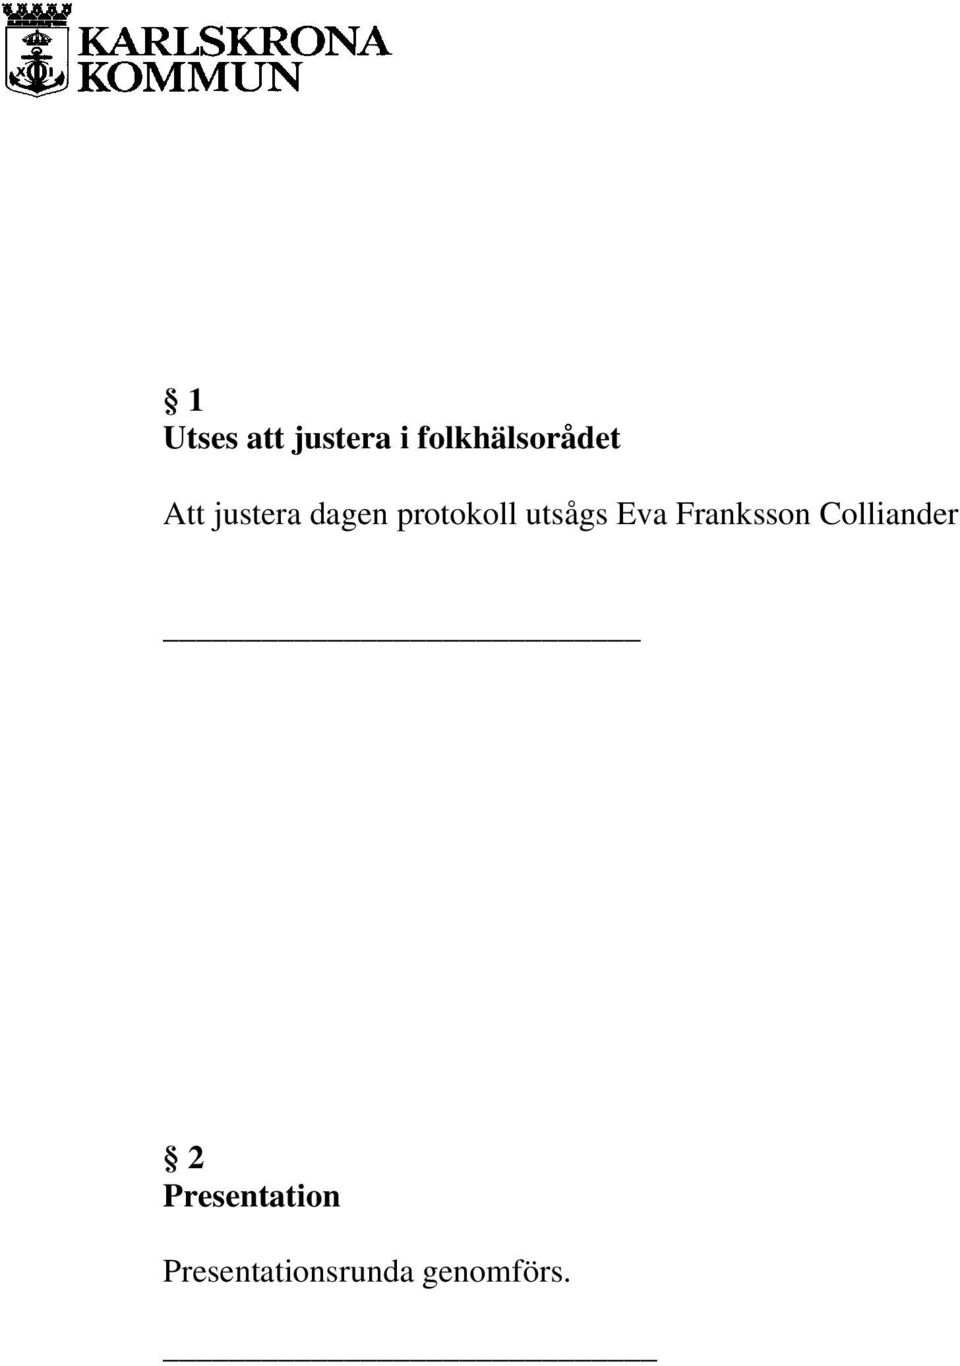 protokoll utsågs Eva Franksson